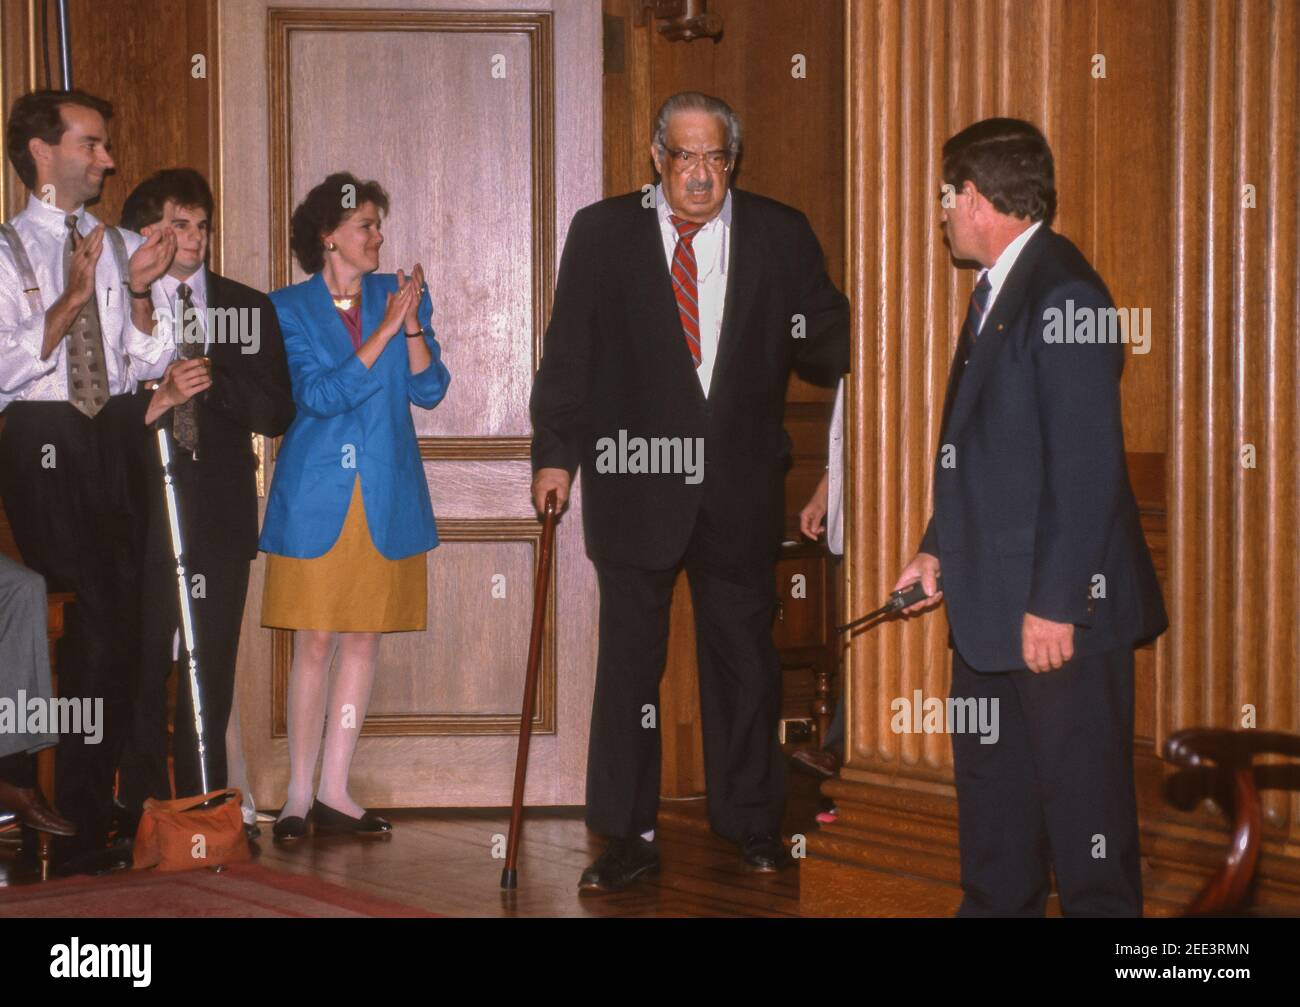 WASHINGTON, DC, USA, 28. JUNI 1991 - der Oberste Gerichtshof Thurgood Marshall kommt zur Pressekonferenz zum Ruhestand, die am Obersten Gerichtshof abgehalten wird Stockfoto